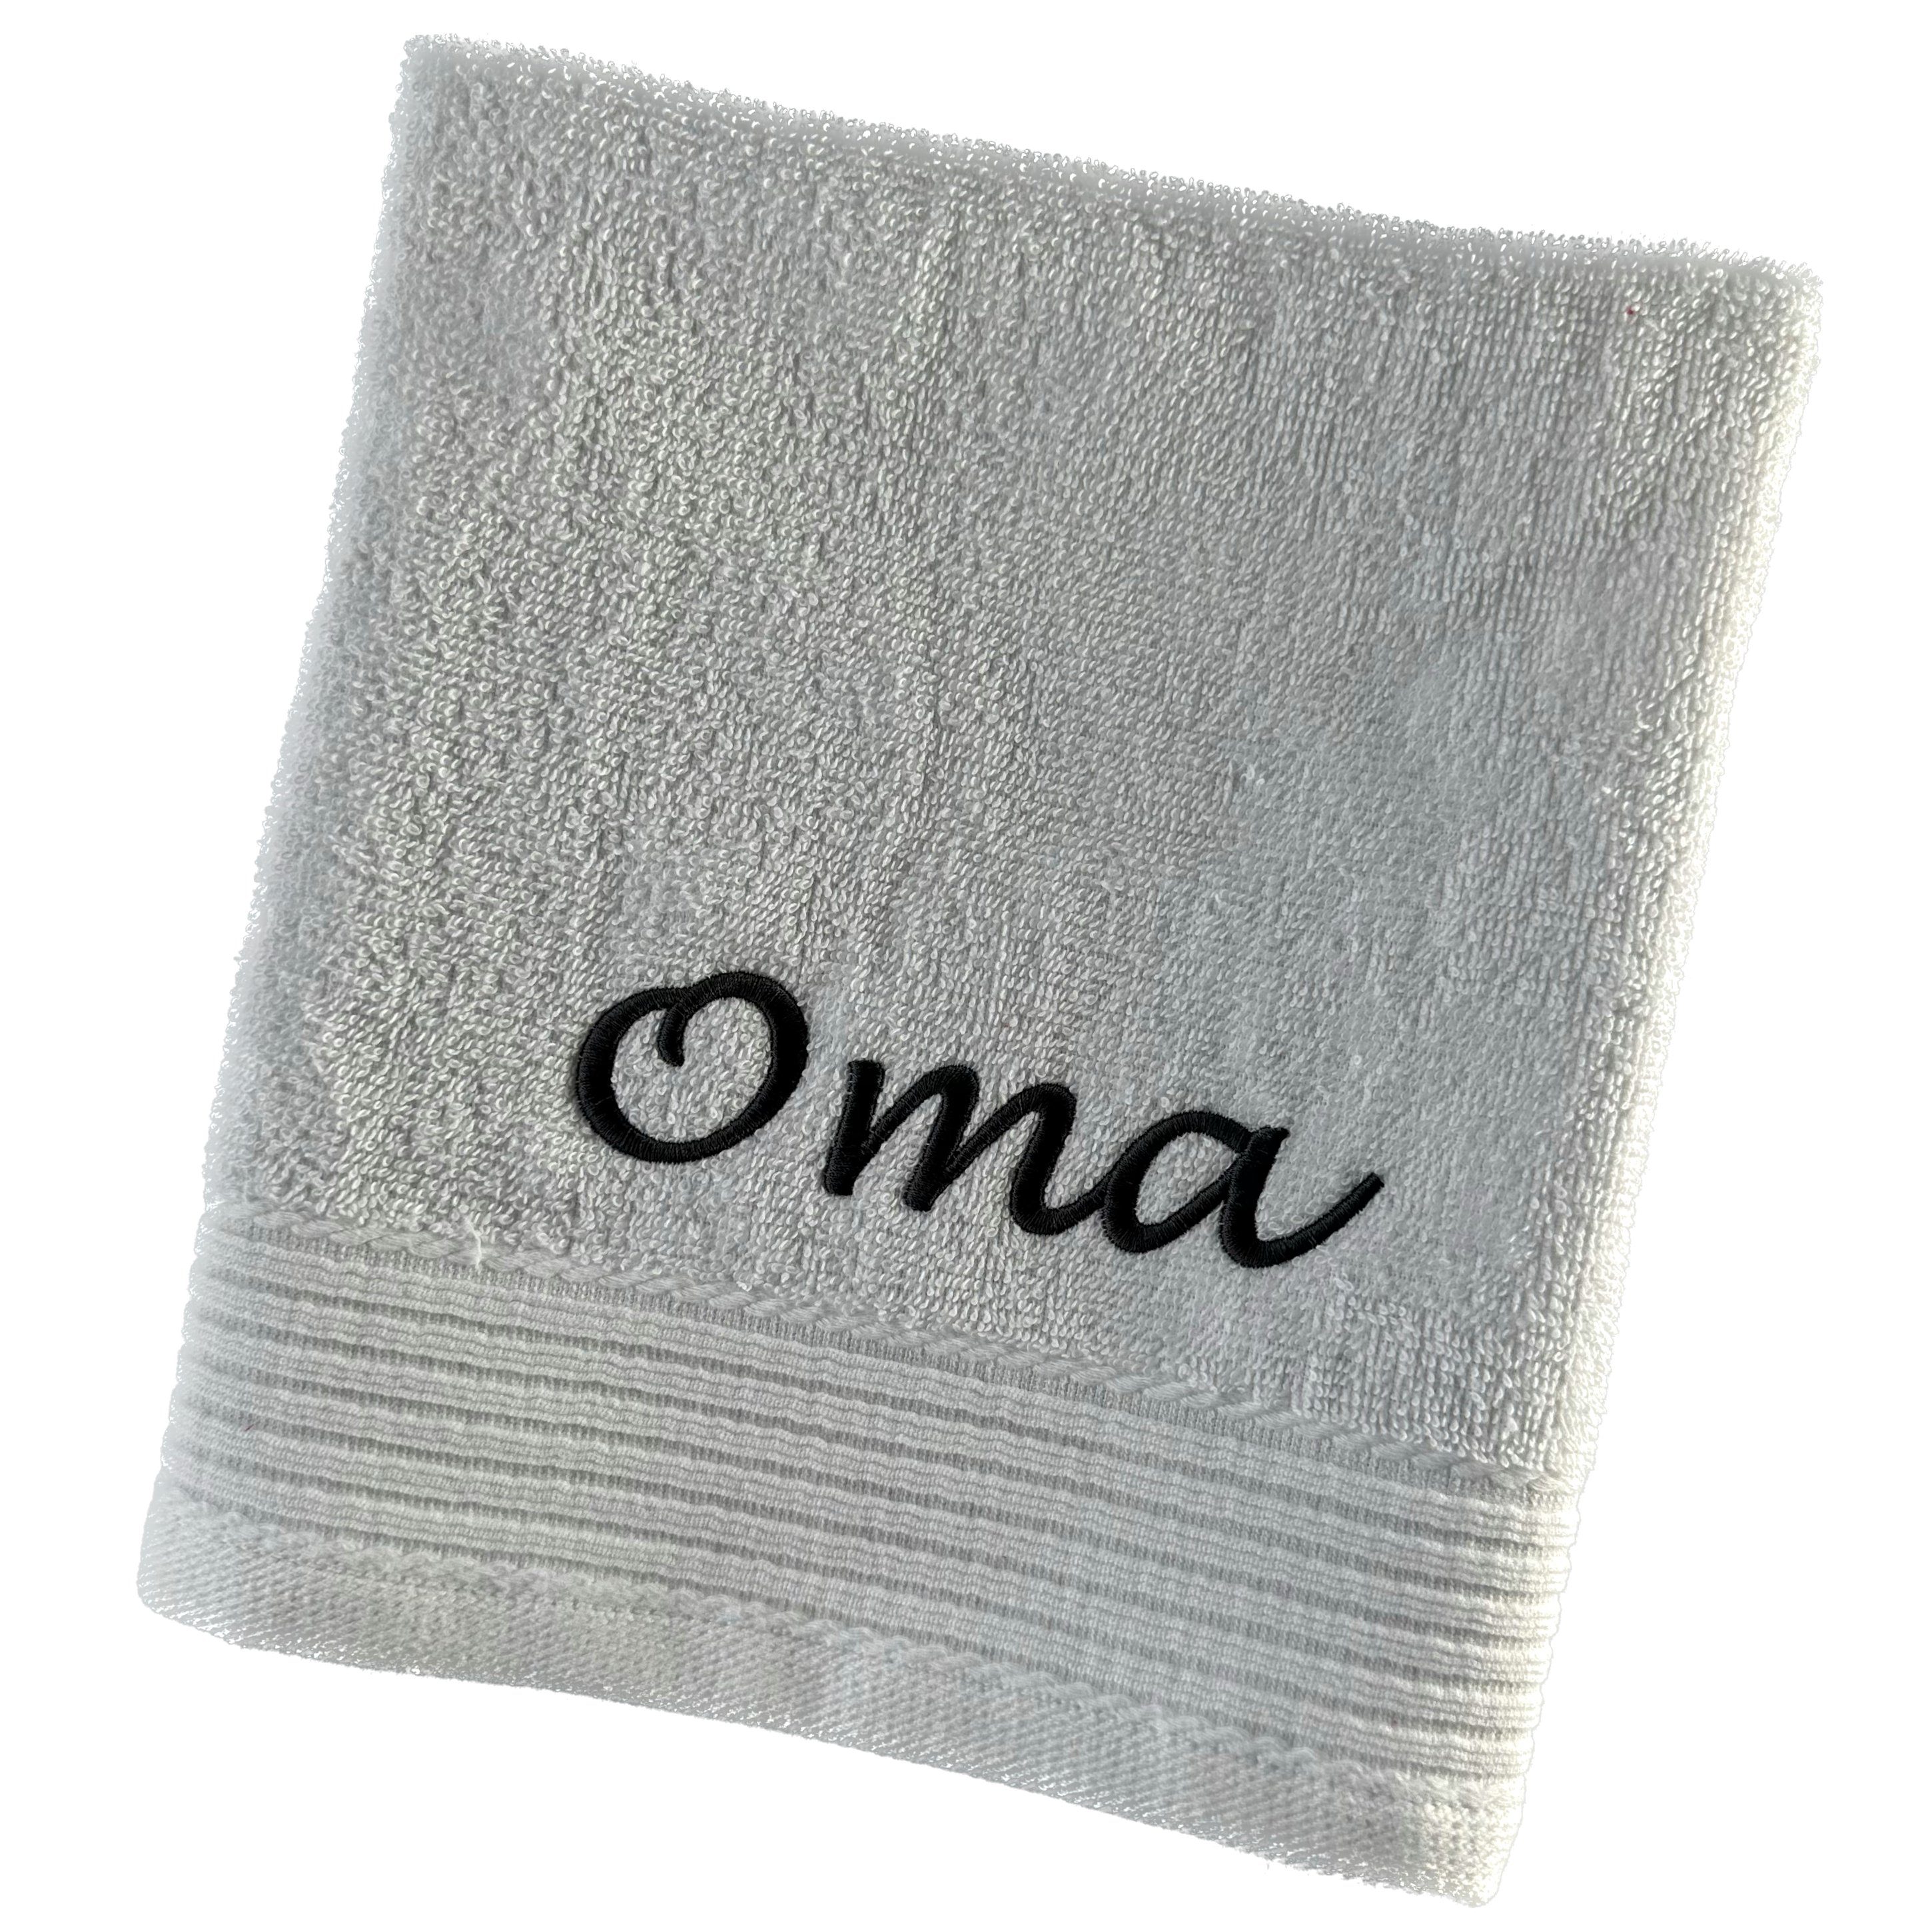 Schnoschi Handtuch Handtuch mit Oma oder Opa bestickt Gästehandtuch Duschtuch Badetuch, hochwertige Bestickung mit Oma oder Opa türkis